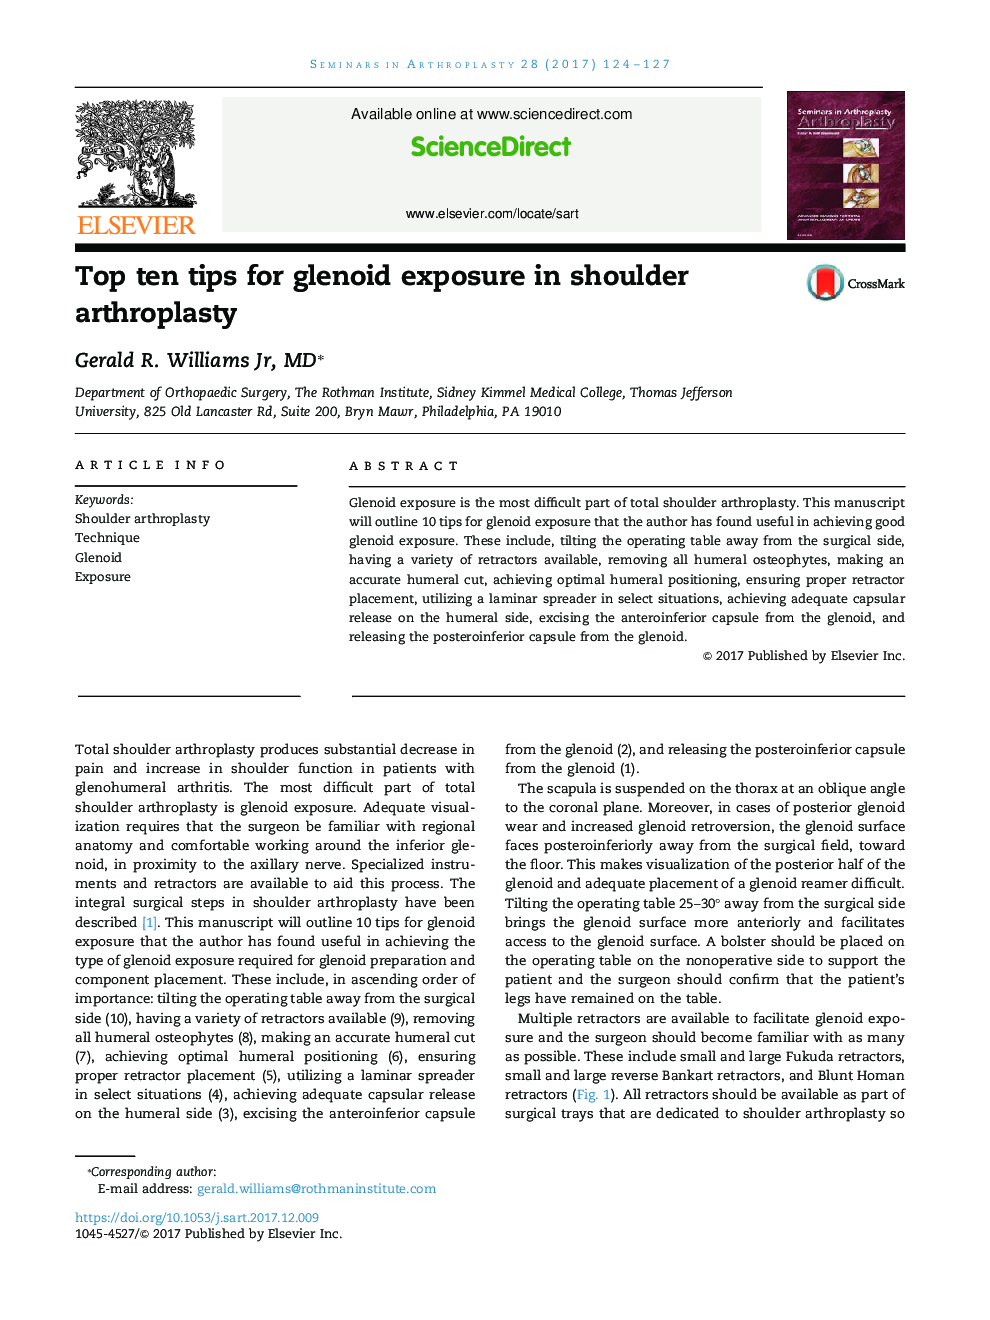 Top ten tips for glenoid exposure in shoulder arthroplasty